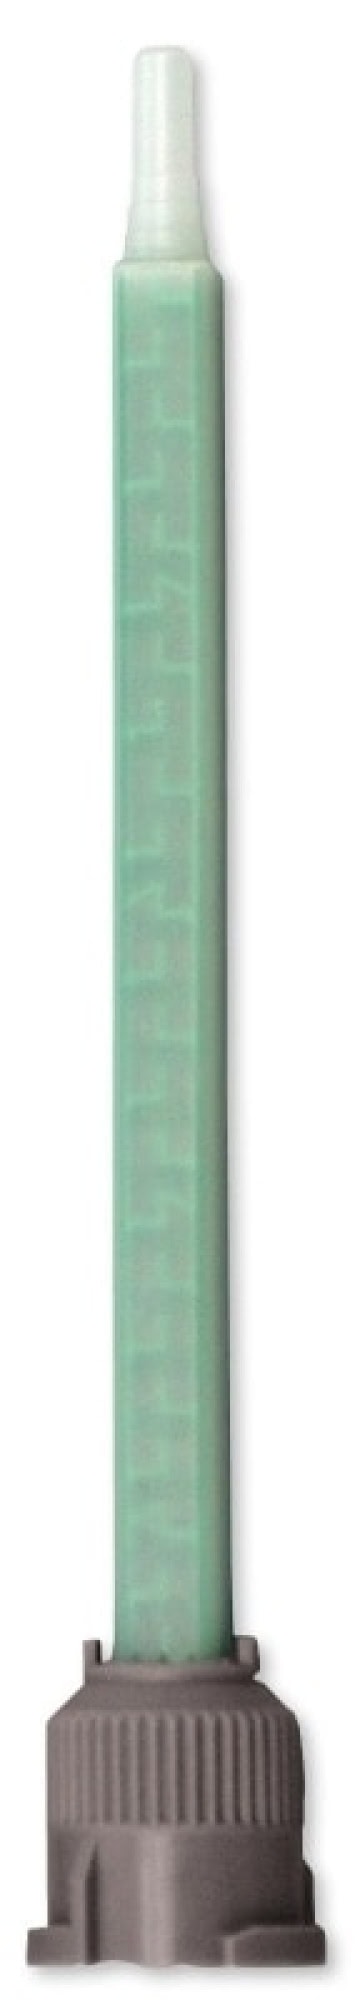 Henkel™ Loctite® Quadro Mischer 1573153, Für 50 ml Doppelkartuschen, Mischverhältnis 1:1 / 2:1, Länge 132 mm, Spitzenöffnung 5 mm